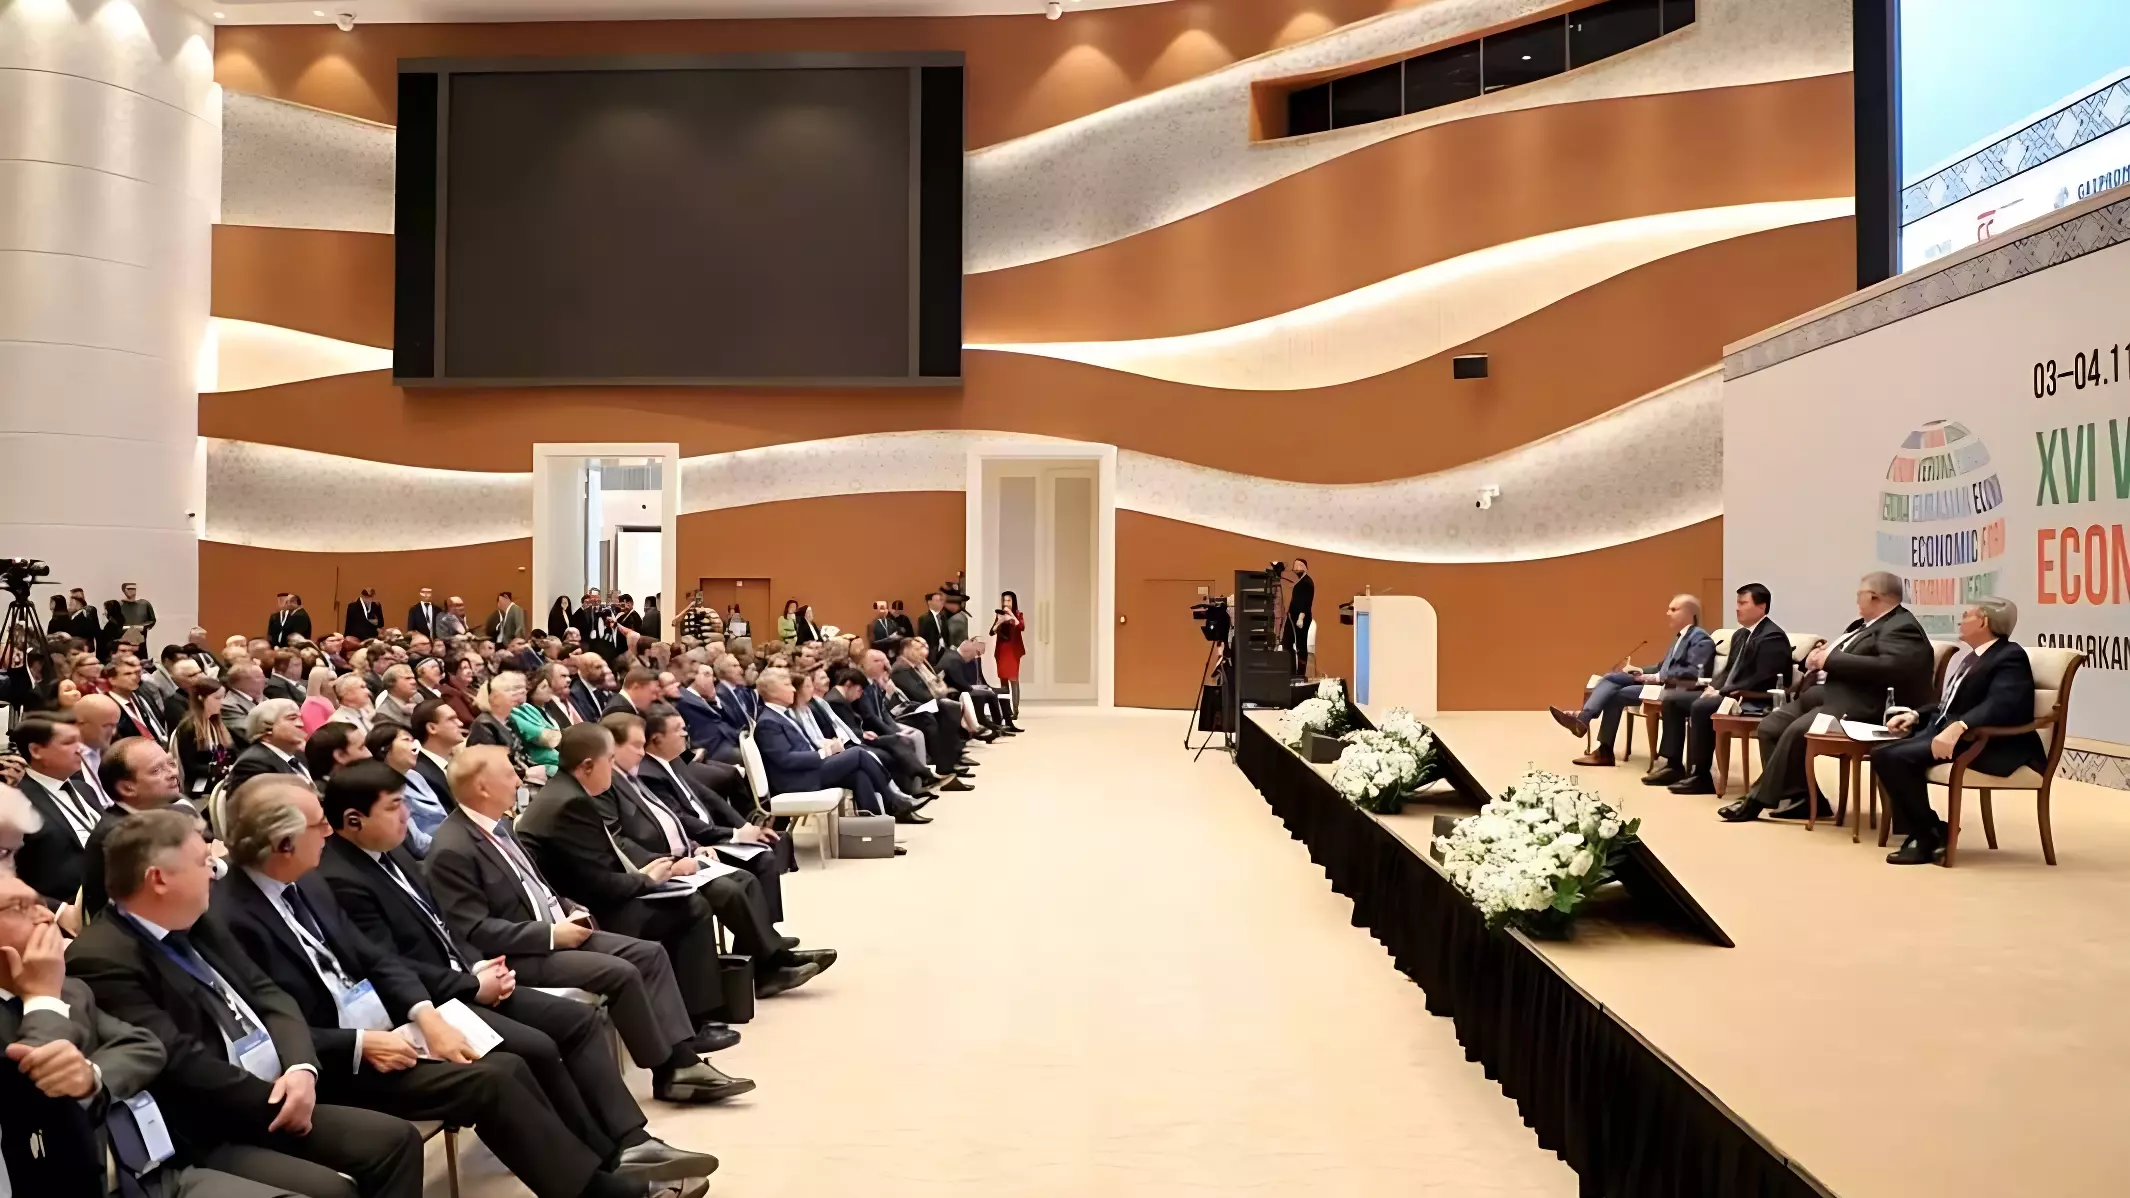 XVI Веронский Евразийский экономический форум прошел в Самарканде